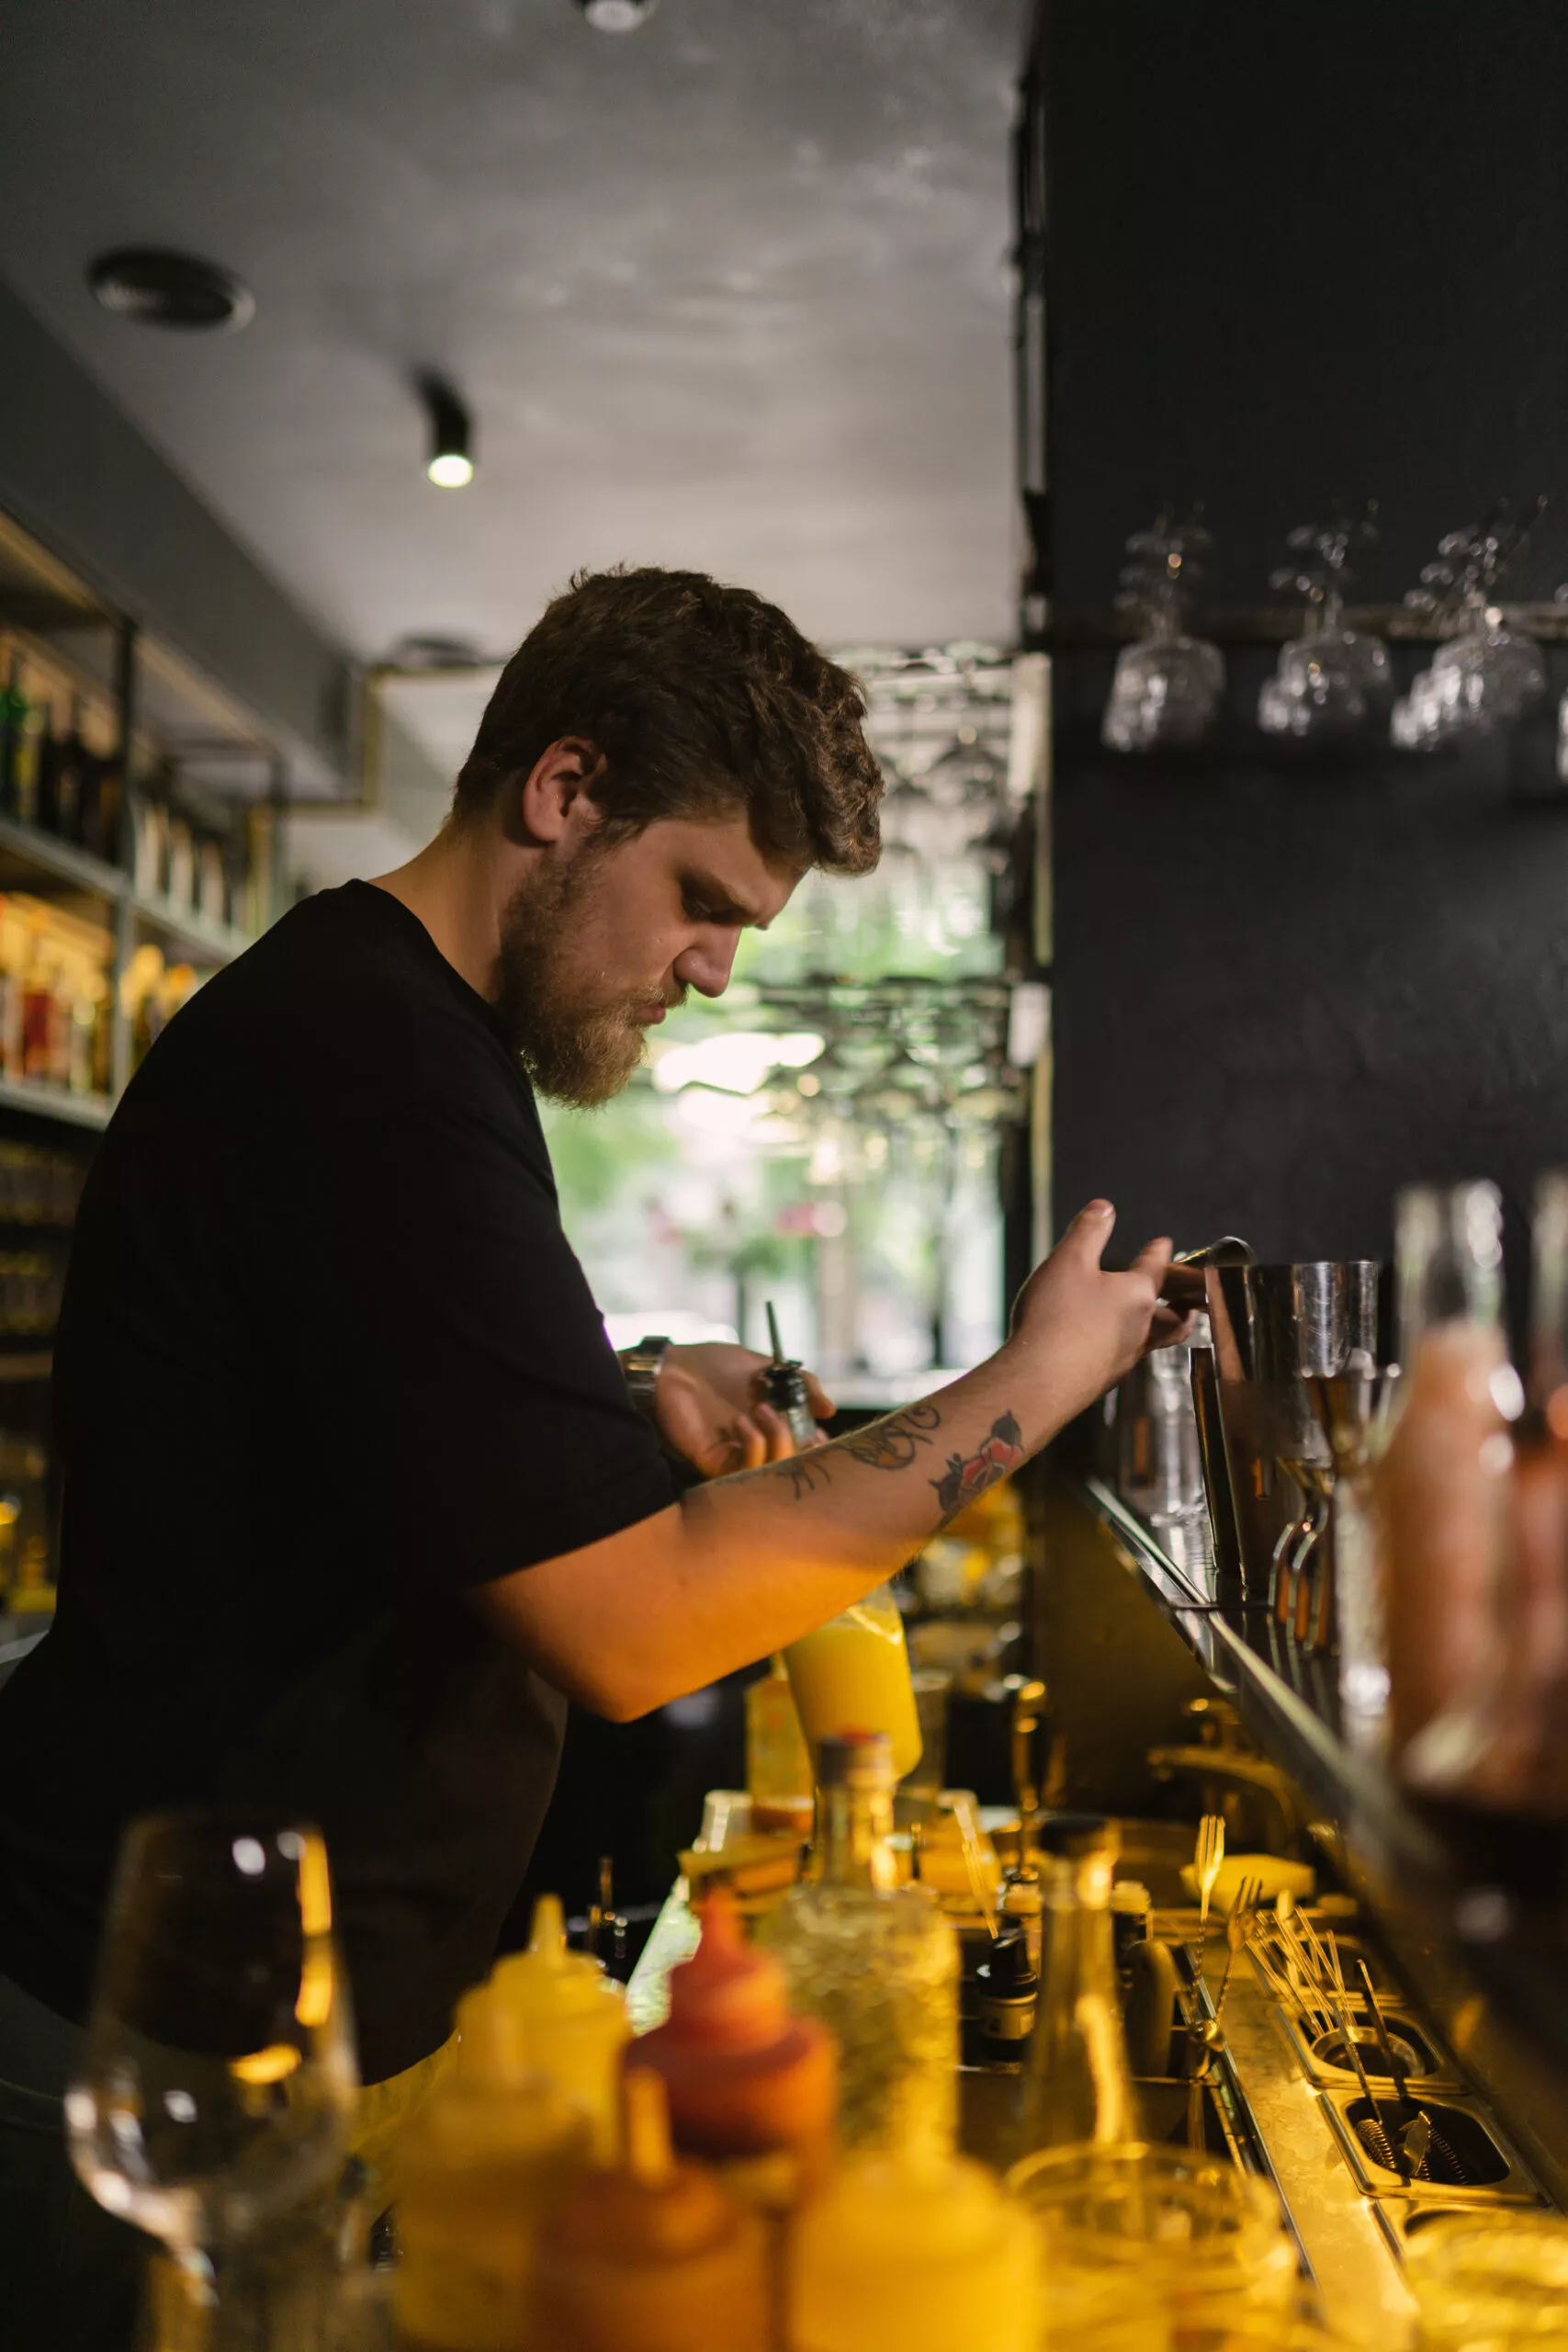 Barman manipuleert met ingrediënten om cocktail te maken voor klant. Masterclass in het maken van ambachtelijke drankjes door professionele barman